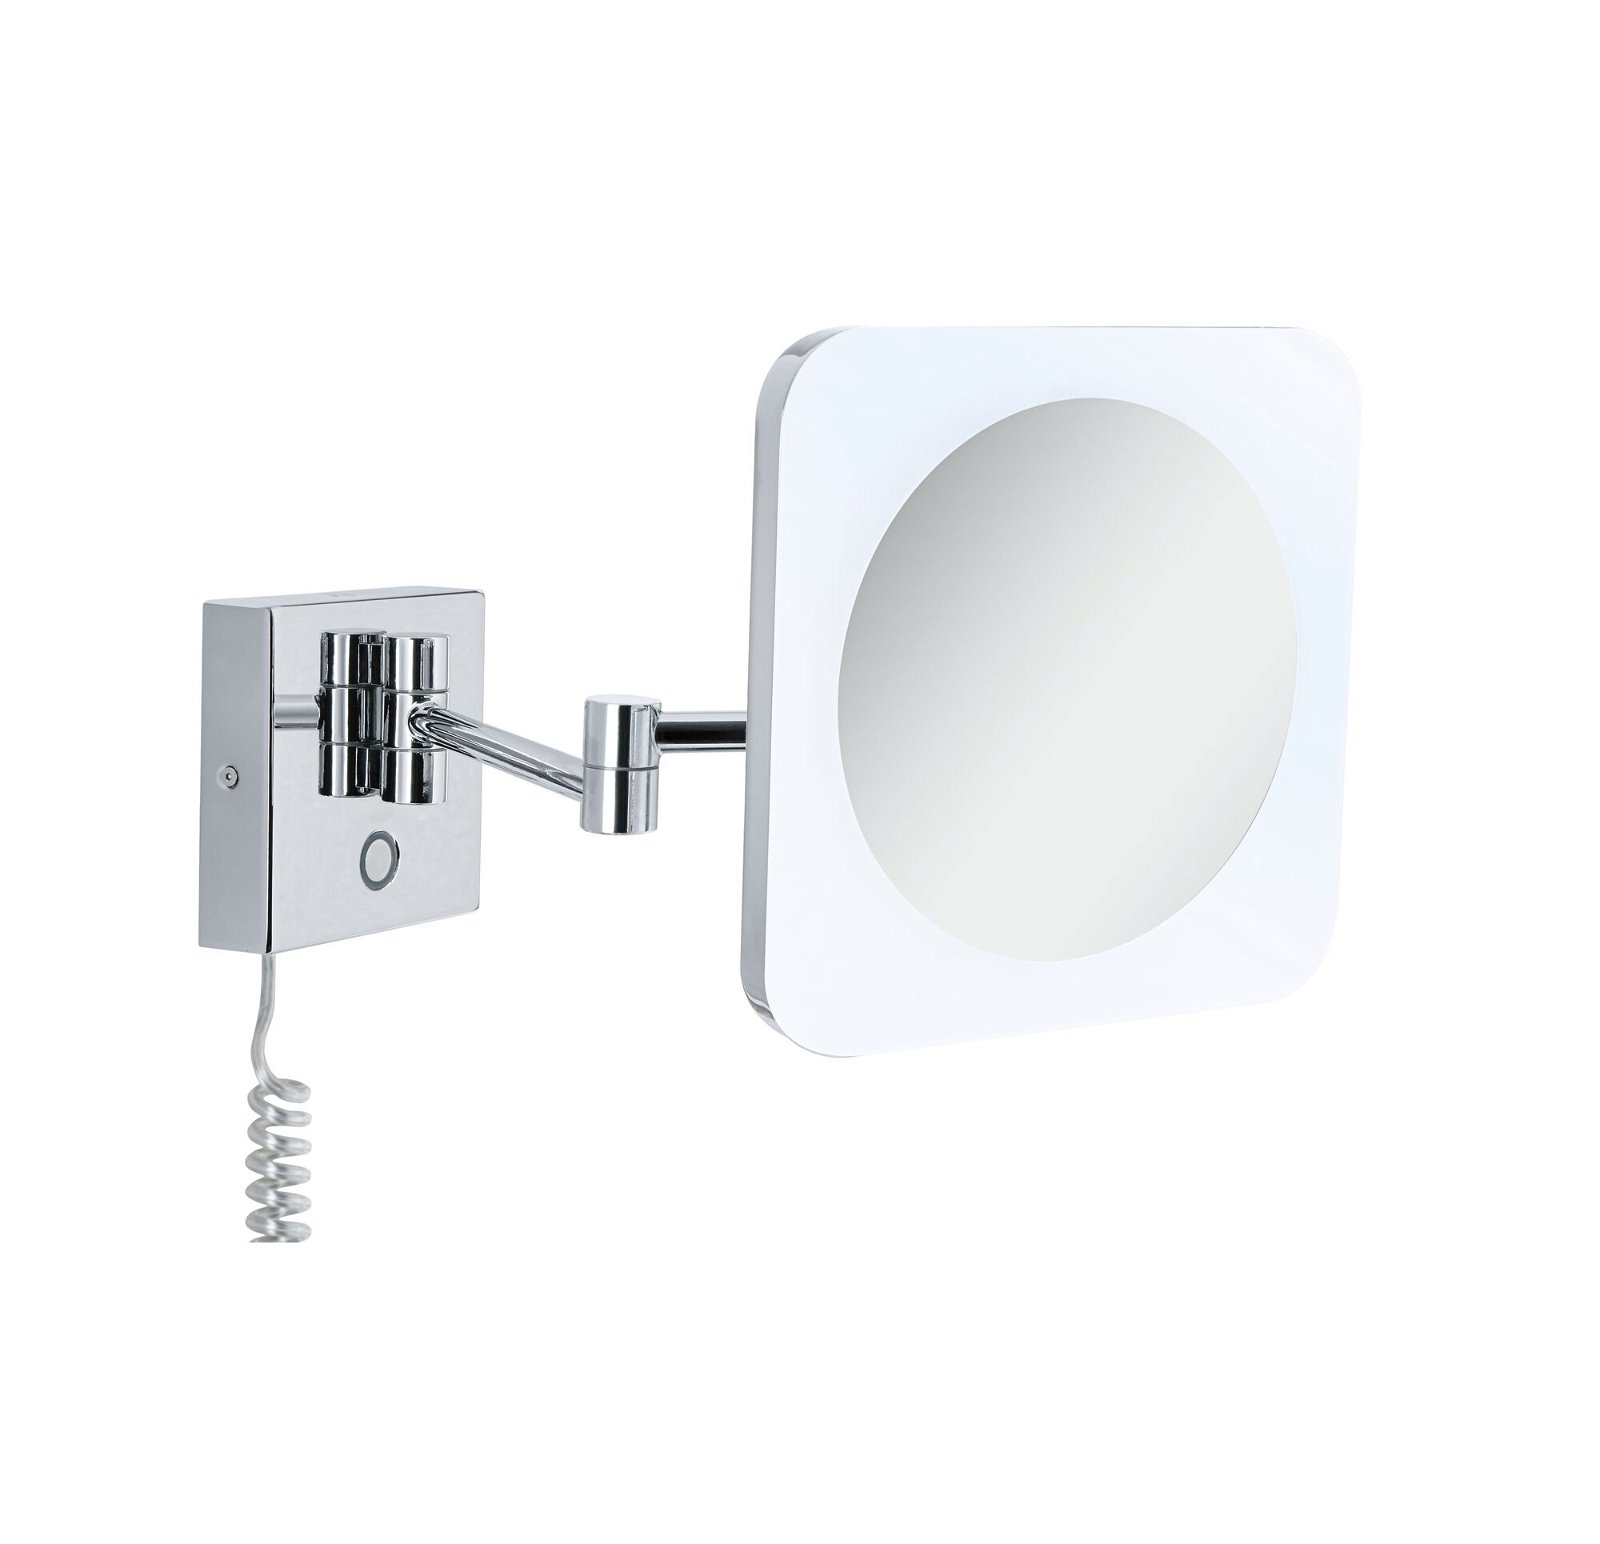 LED Kosmetikspiegel Jora IP44 White Switch 60lm 230V 3,3W Chrom/Weiß/Spiegel